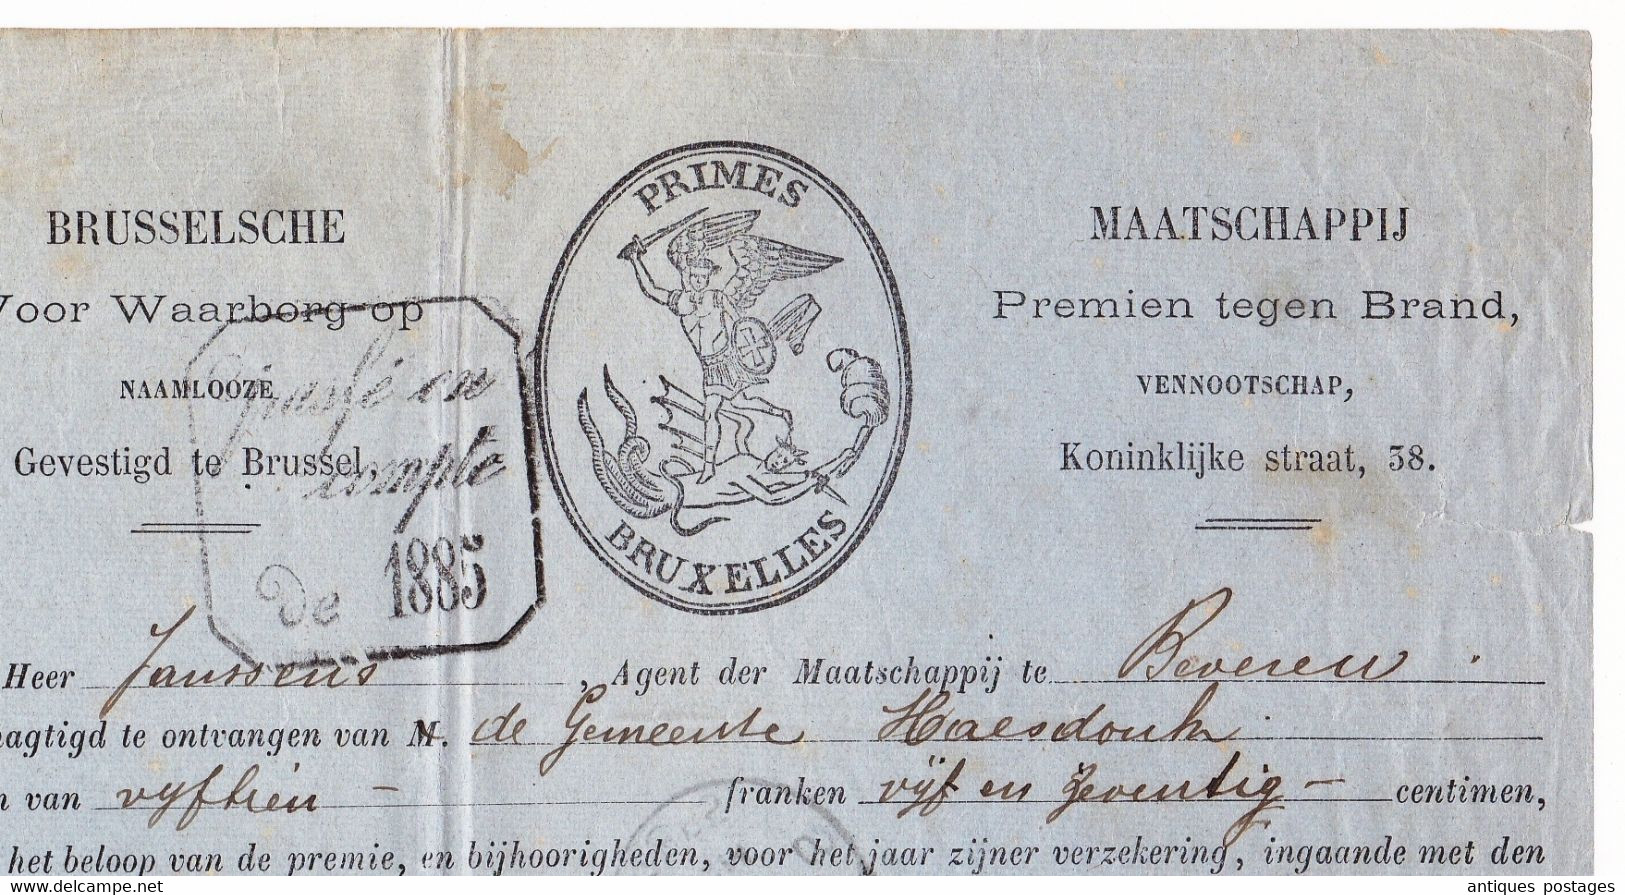 Belgique 1885 Primes Bruxelles Saint-Nicolas Beveren Maatschappij Premien Tegen Brand - 1883 Leopold II.